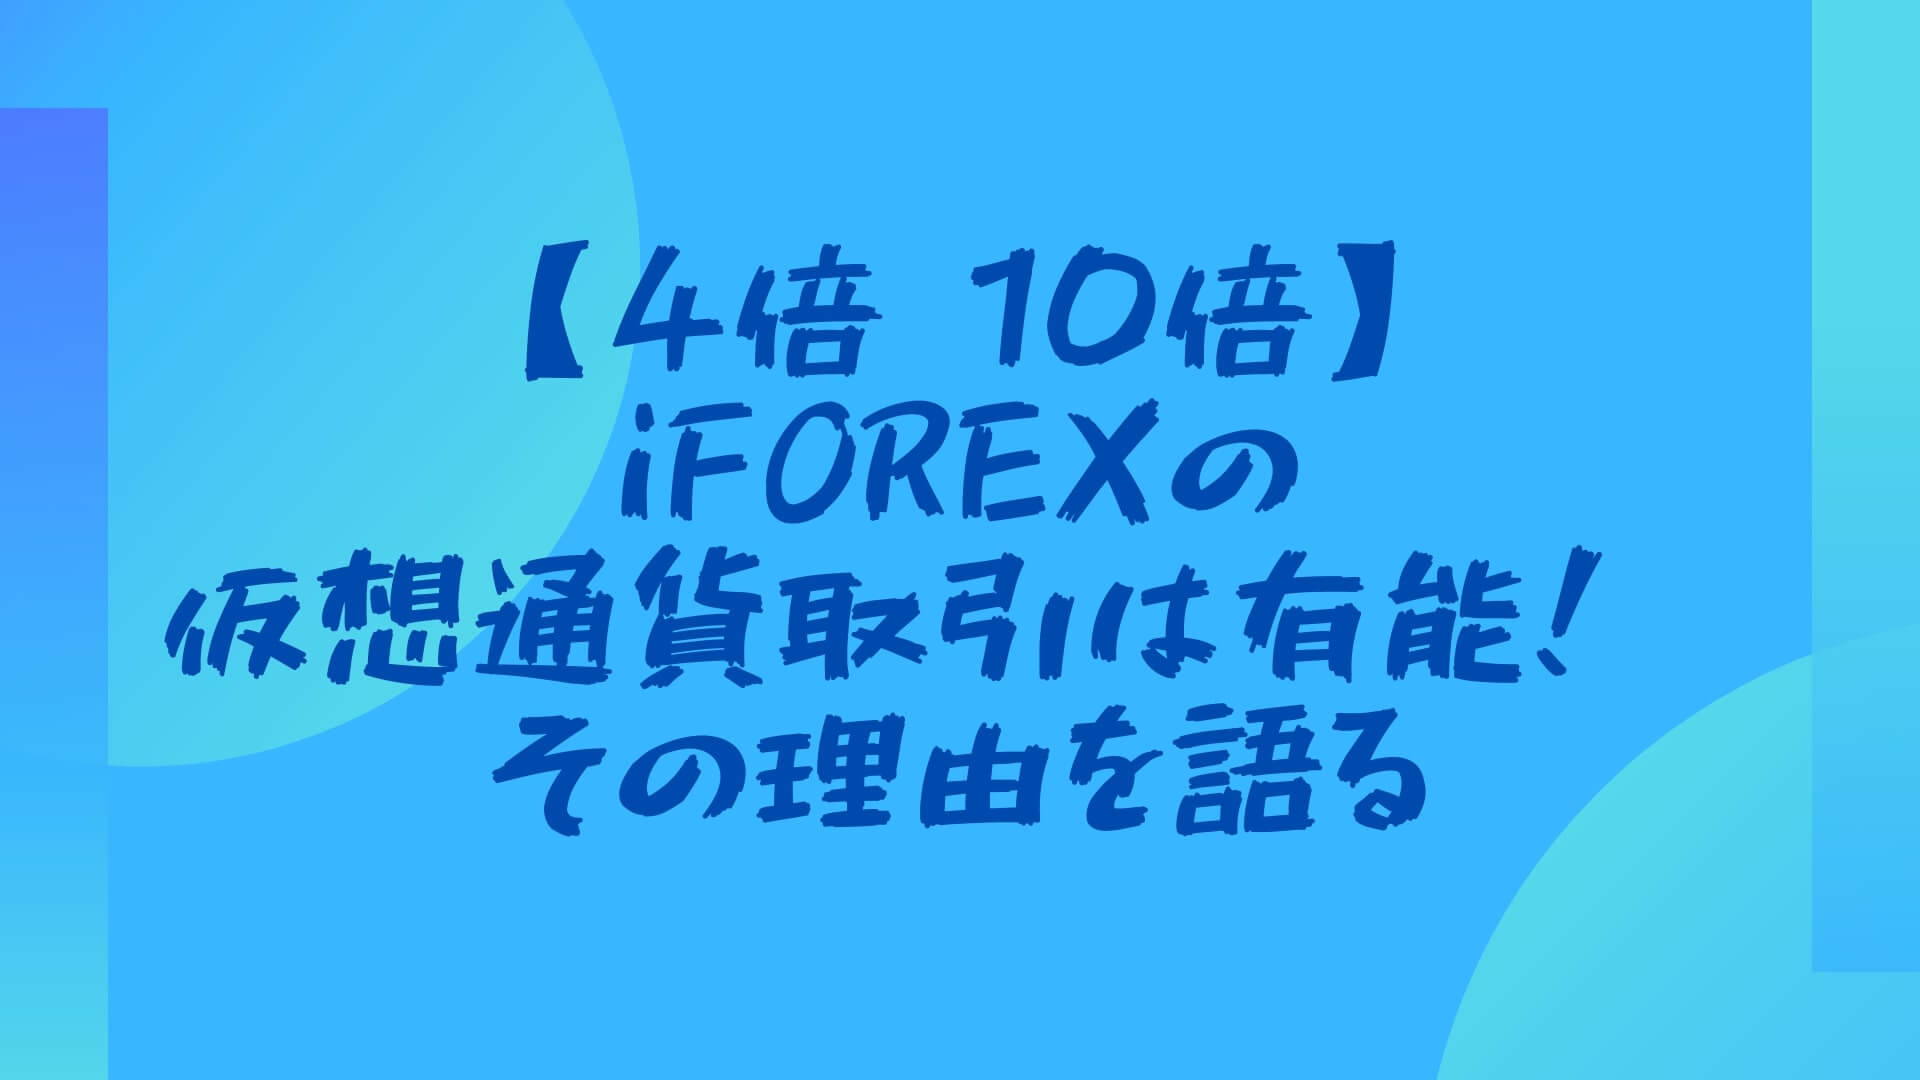 【4倍→10倍】iFOREXの仮想通貨取引は有能！→その理由を語る